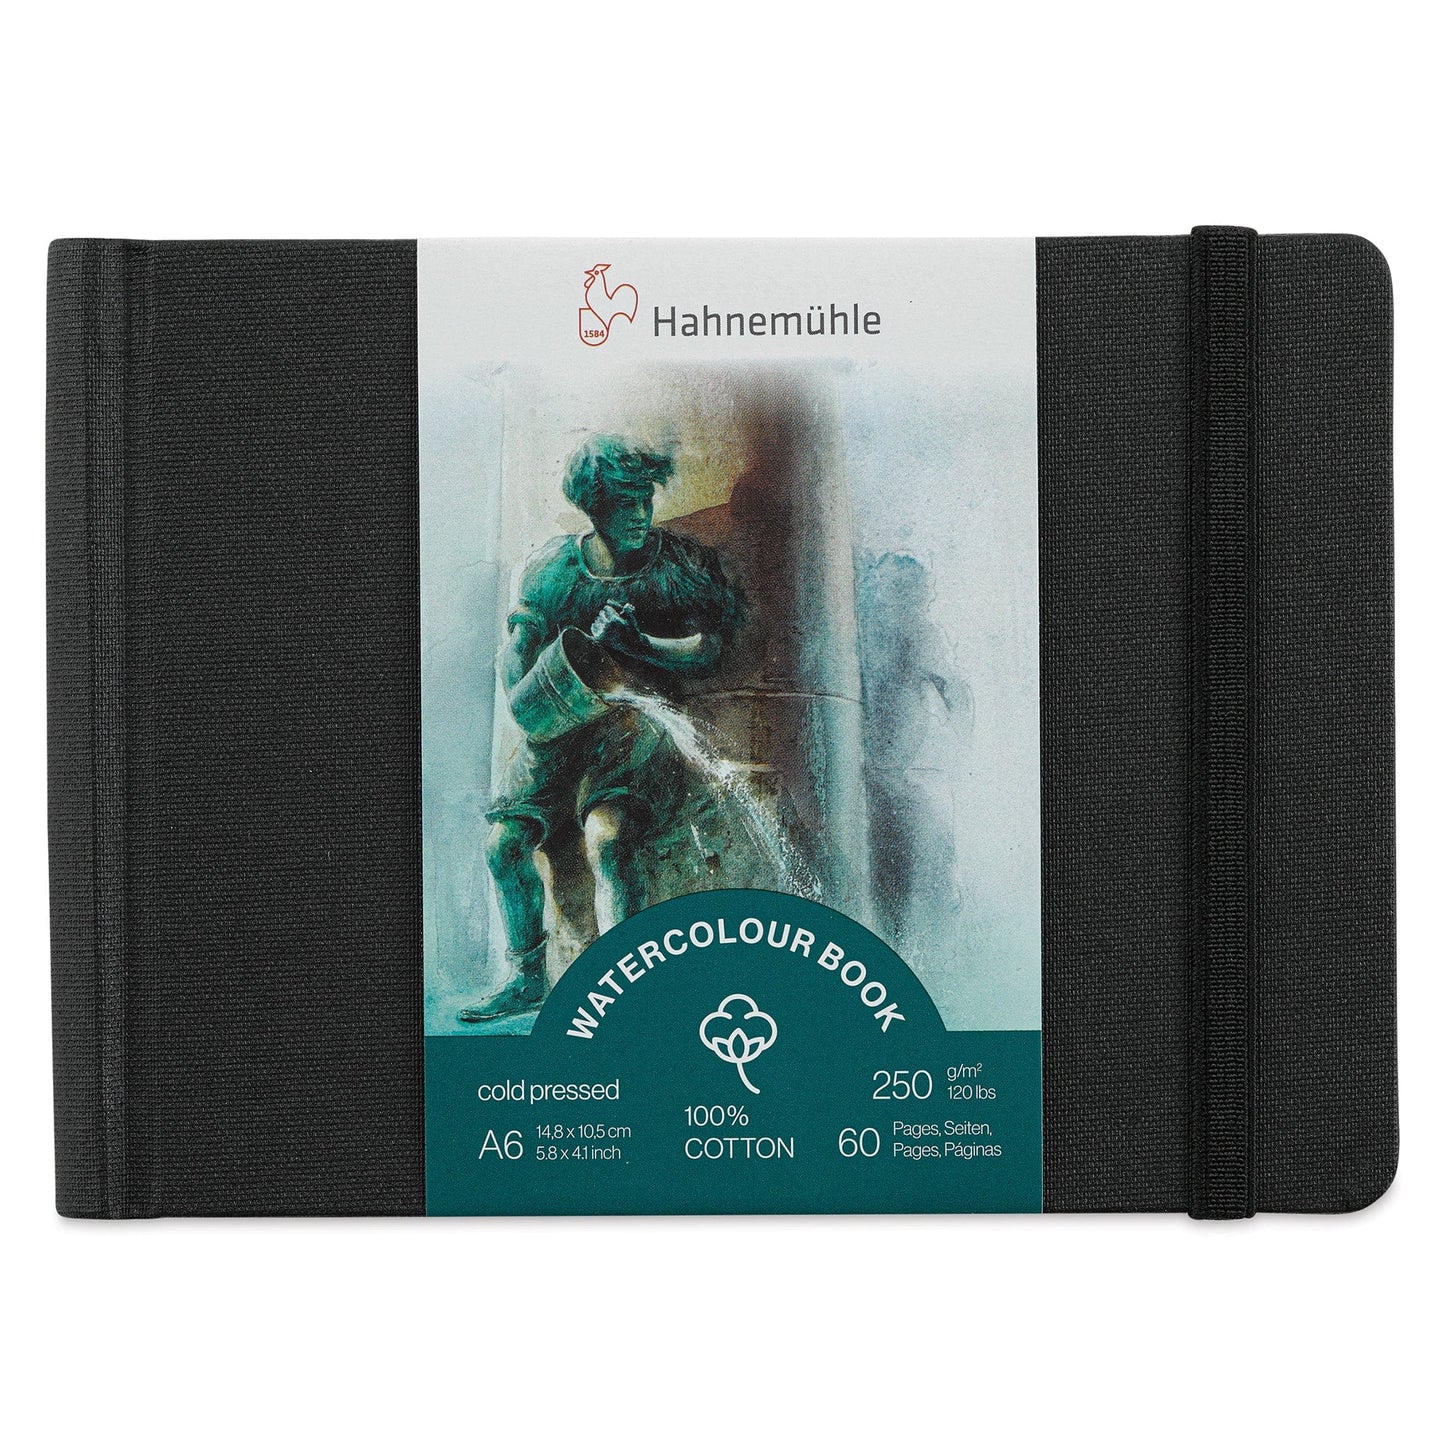 Hahnemühle Watercolour Pad - Hardcover Hahnemühle - 100% Cotton Watercolour Book - A6 - Landscape - Item #10625351